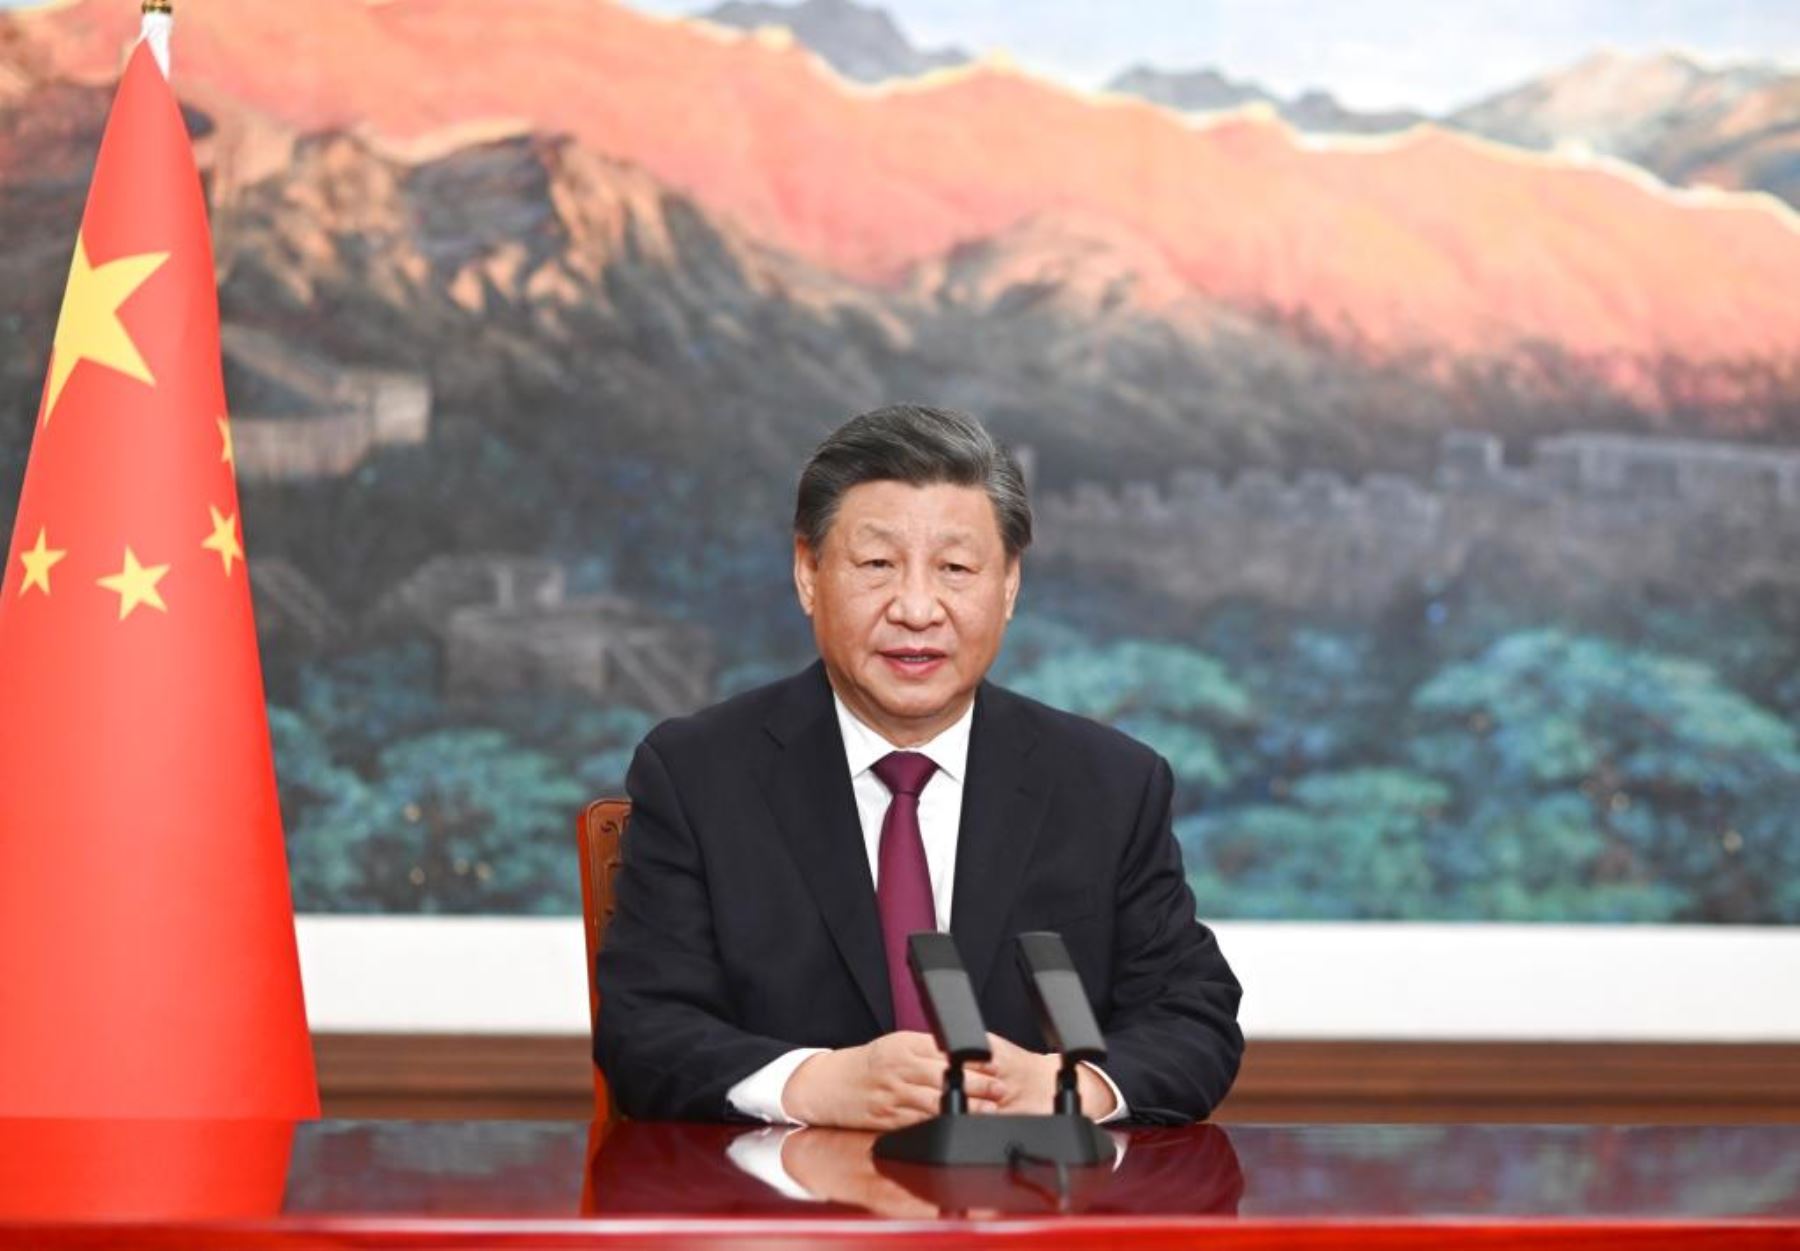 Xi Jinping, presidente chino, asistirá a la cumbre APEC y la inauguración del Megapuerto de Chancay, fortaleciendo la relación con Perú